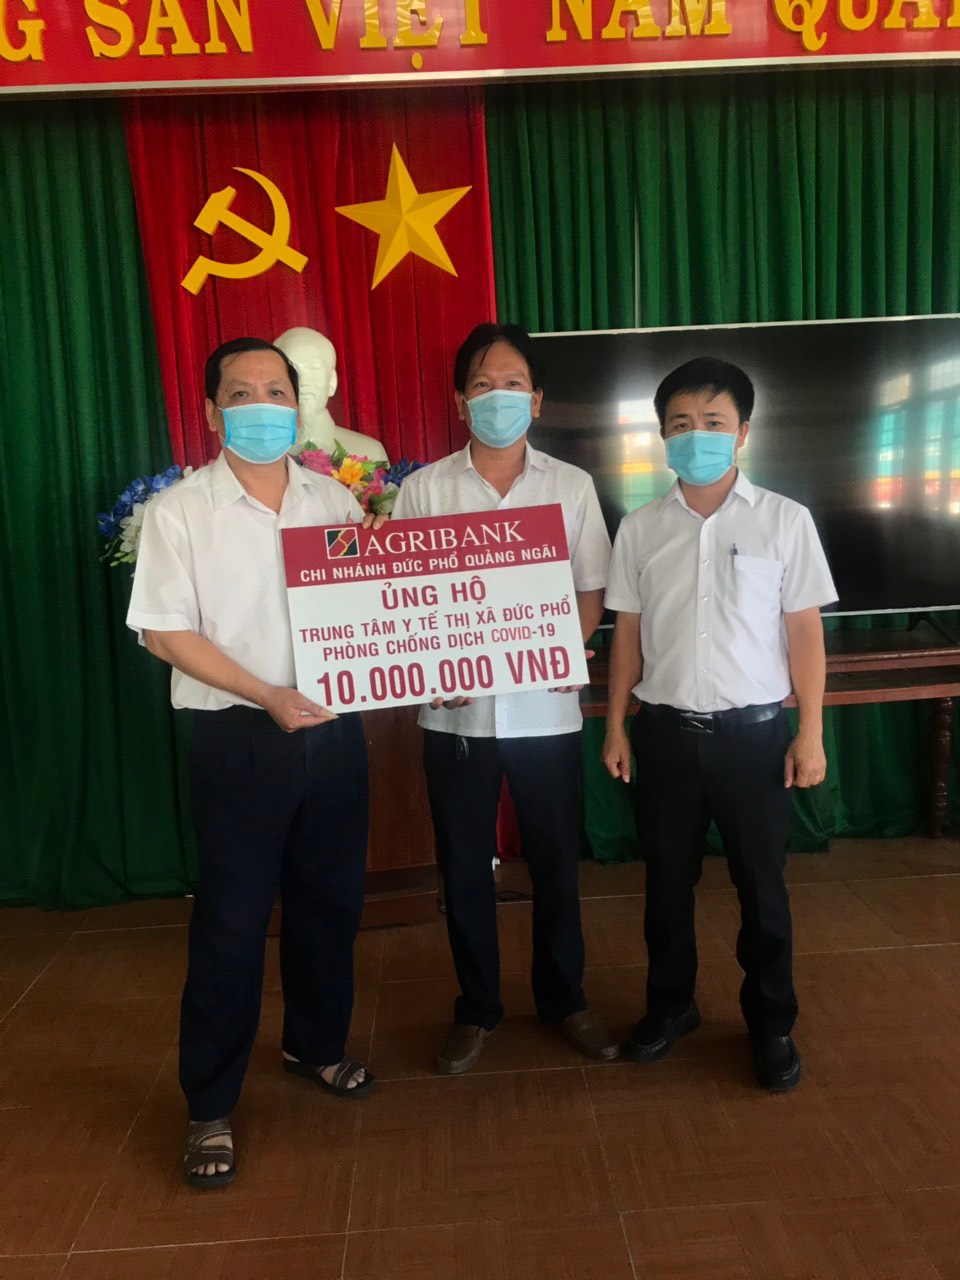 Agribank tỉnh Quảng Ngãi ủng hộ 200 triệu đồng cho Quỹ phòng, chống dịch Covid-19 - Ảnh 4.